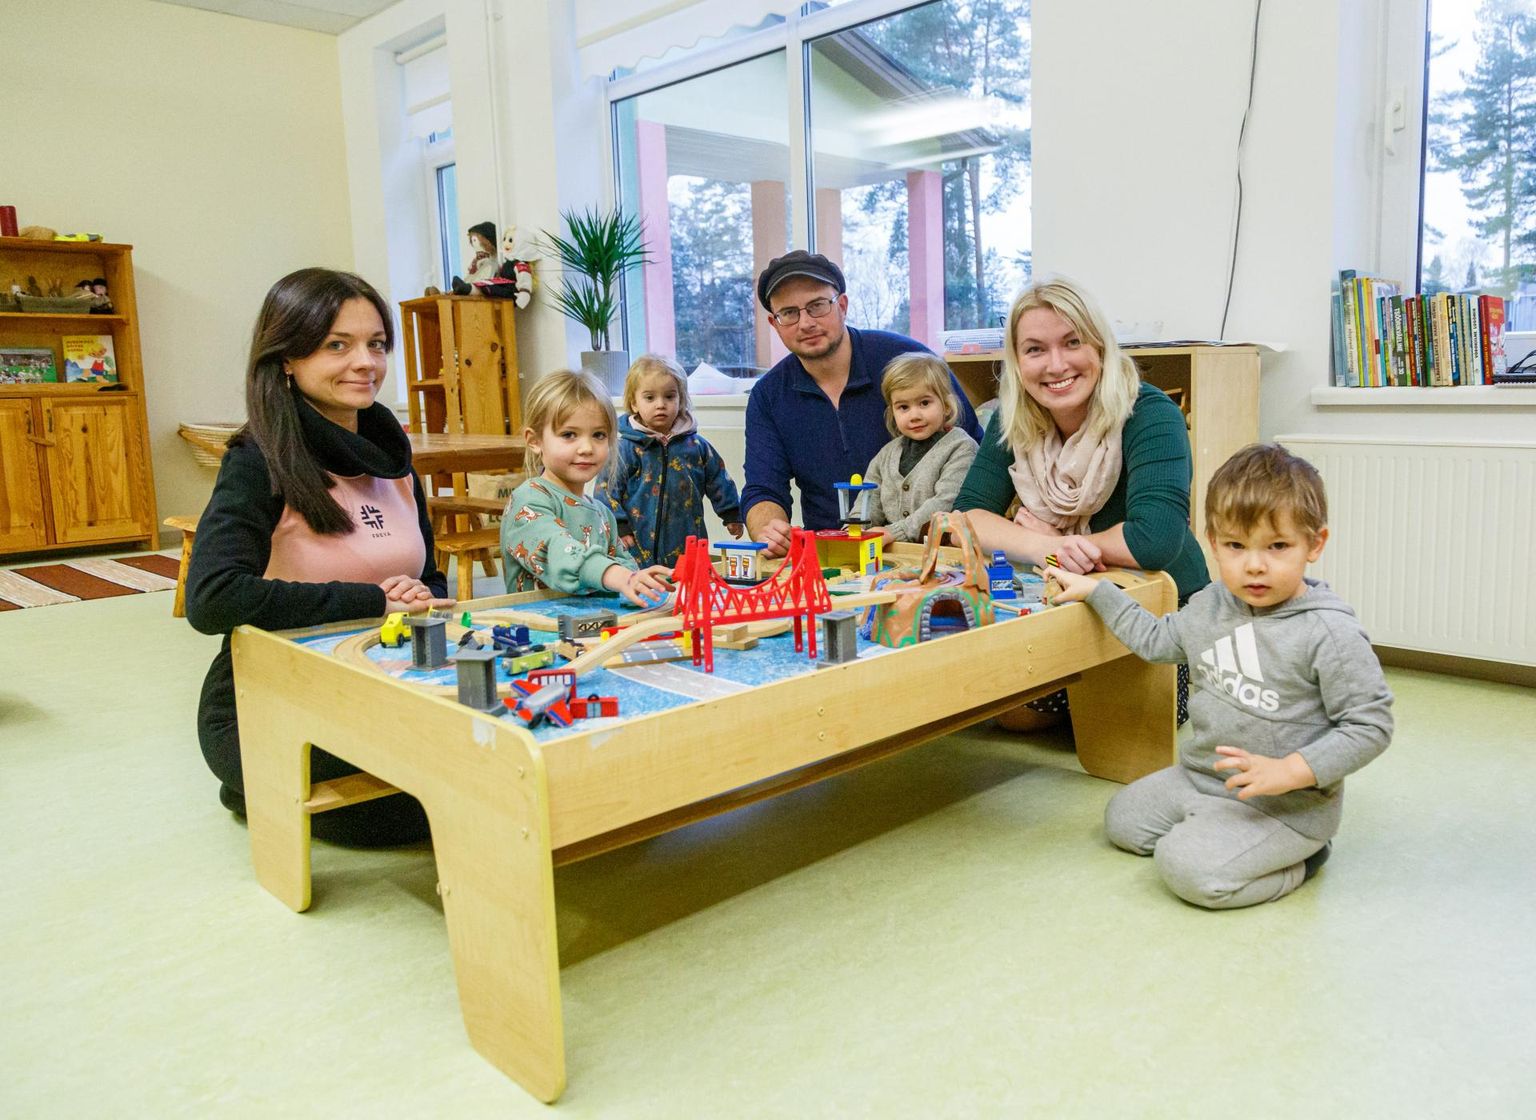 Setokeelne lasteaiarühm sündis lastevanemate koostöös: Liis Samuel (vasakult) aitab ruume sisutada, Toomas Valk ehitab laudu ja toole, Helena Elgindy õpib haridusinnovatsiooni ning on abiks nõu ja jõuga.